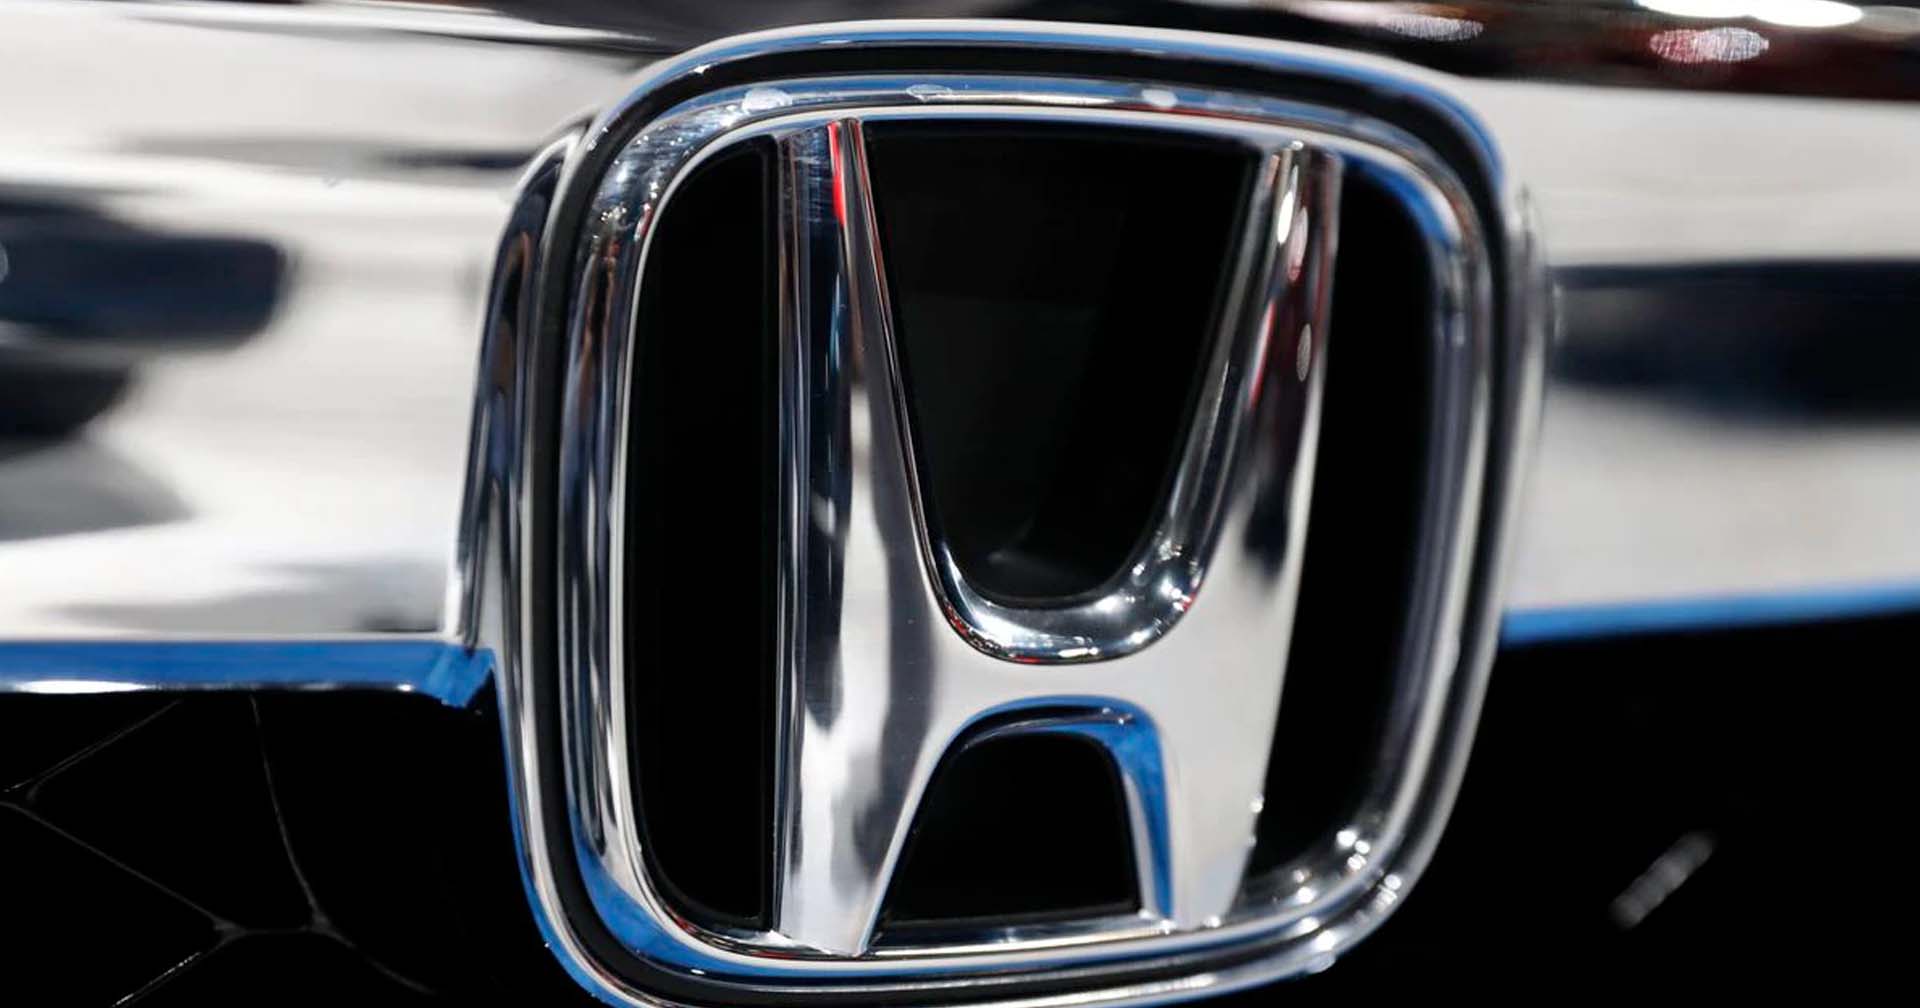 Honda เรียกคืนรถยนต์ไฮบริด 200,000 คันที่ผลิตในจีน หลังพบความผิดปกติ